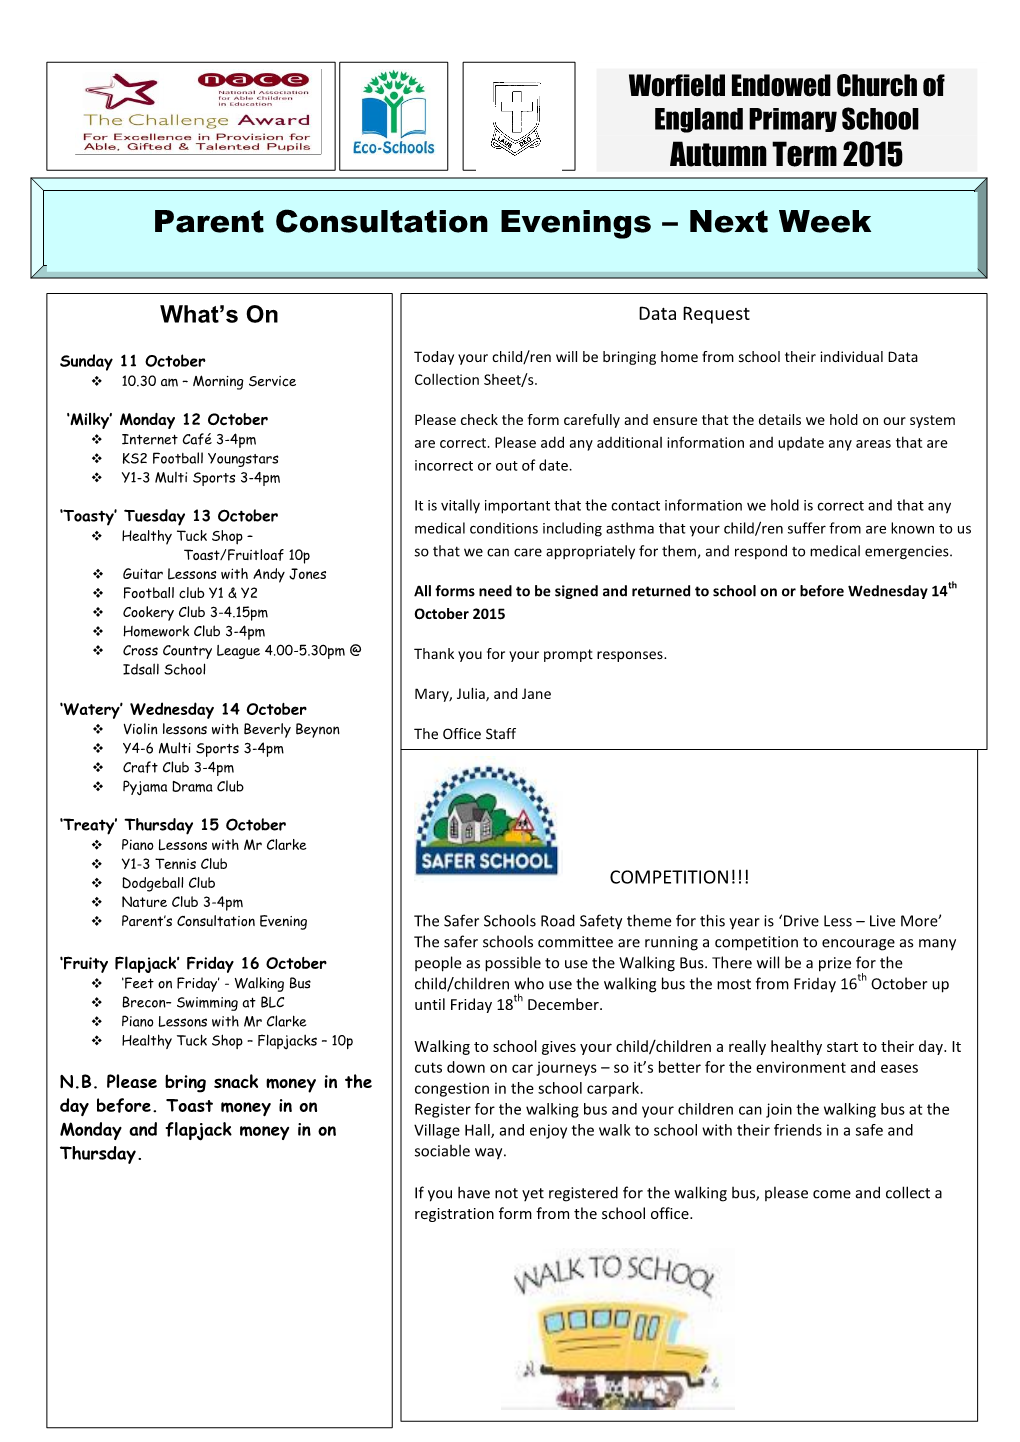 Autumn Term 2015 Parent Consultation Evenings